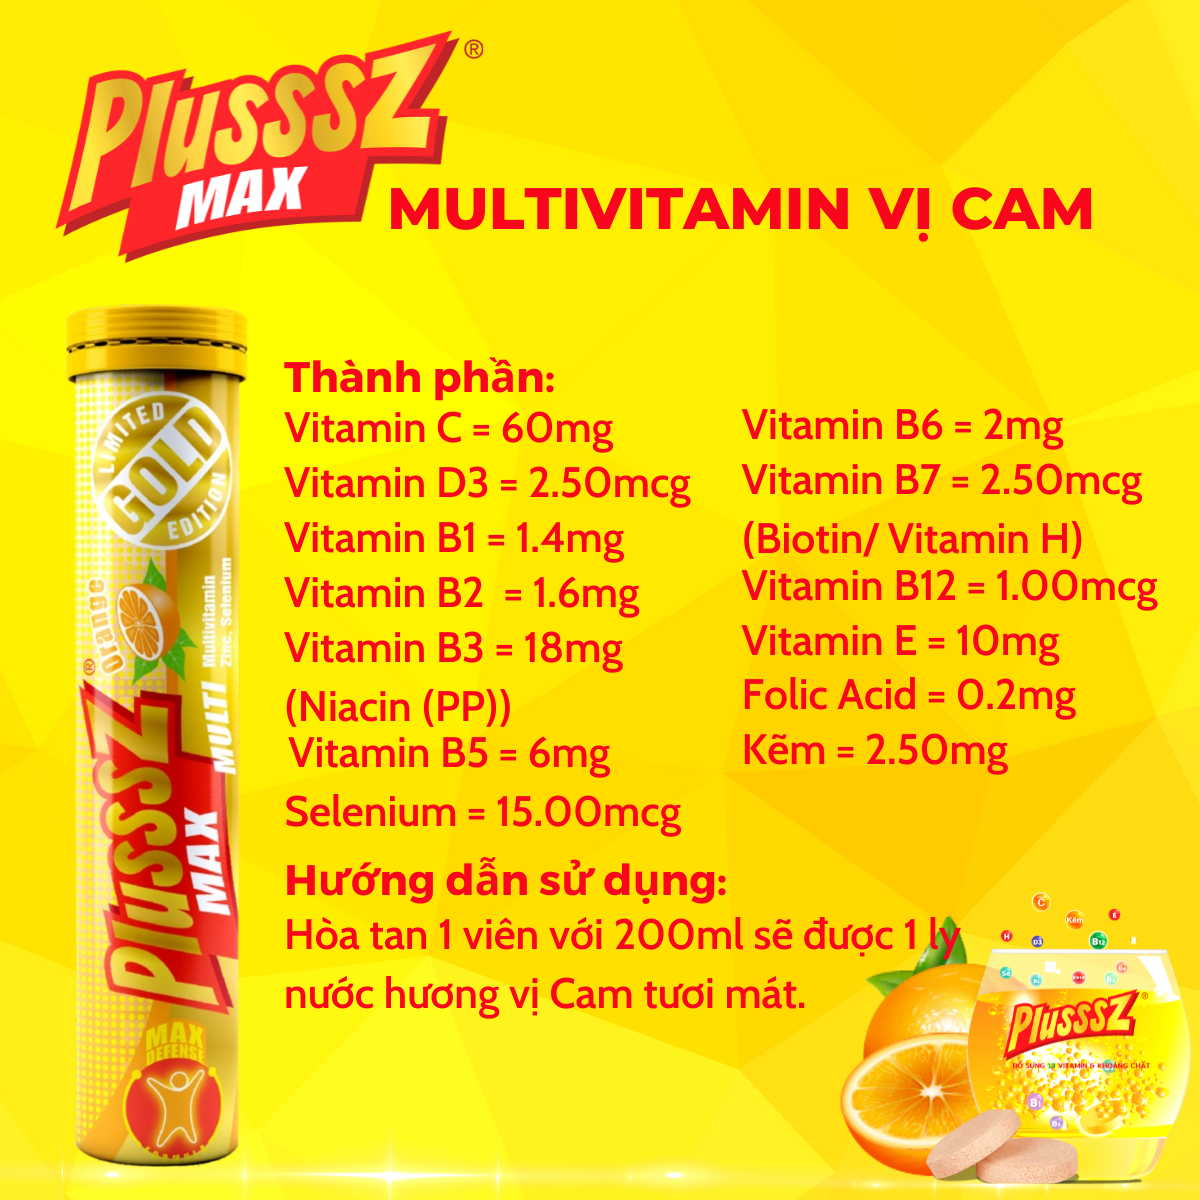 {COMBO2TUYP} Viên sủi Plusssz Max Multivitamin hương vị Cam không đường bổ sung vitamin C và khoáng chất dạng hòa tan, dễ hấp thu hỗ trợ tăng cường đề kháng, vững vàng sức khỏe (Tuýp 20 viên sủi).